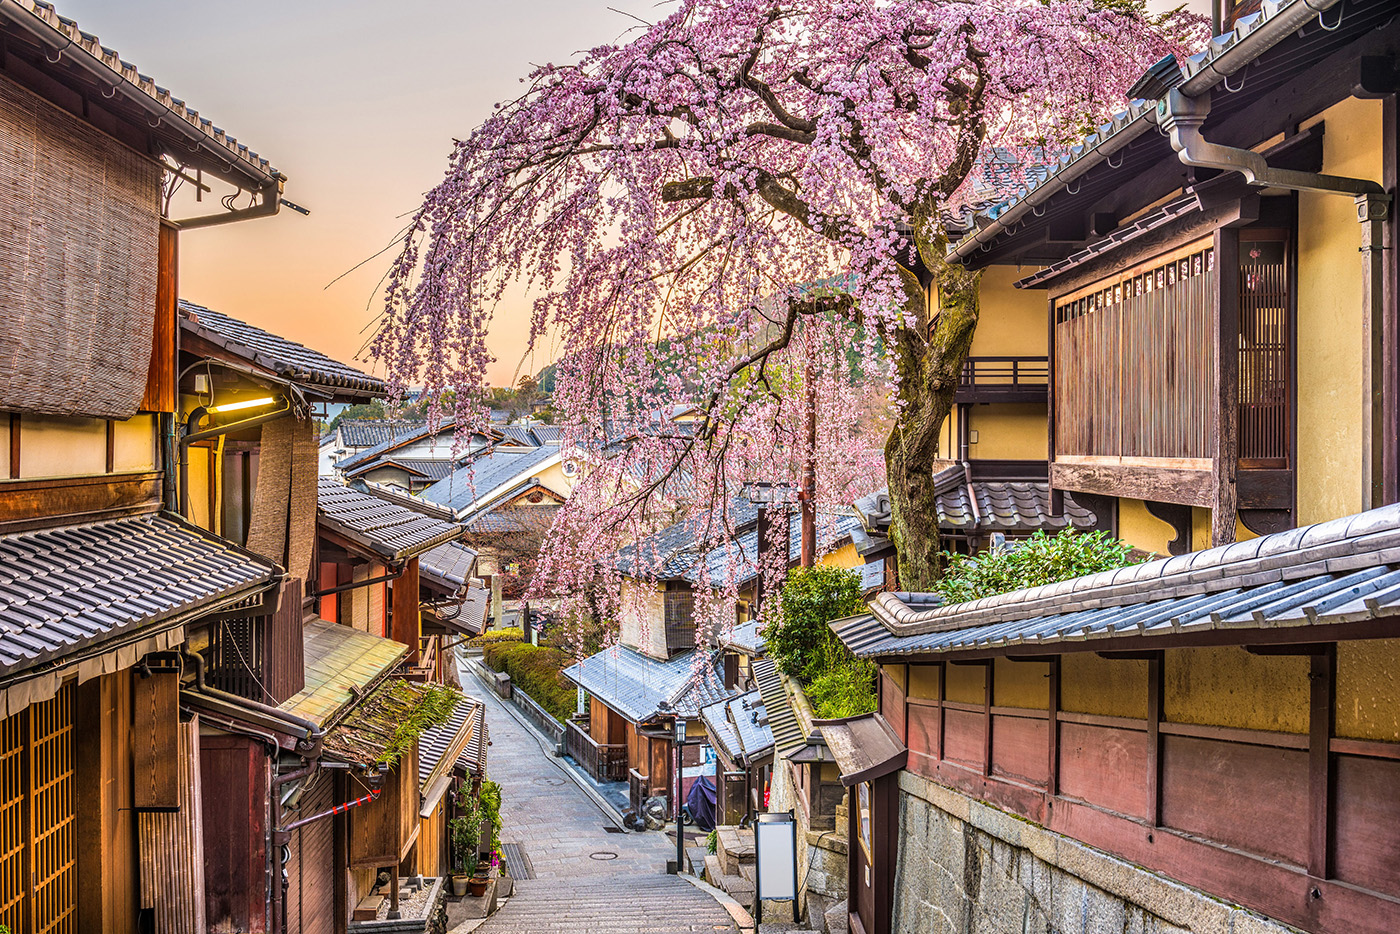 Sehen Sie die Kirschblüte inmitten von Kyōtos Tempeln, weitläufigen Gärten und prächtigen Kaiserpalästen